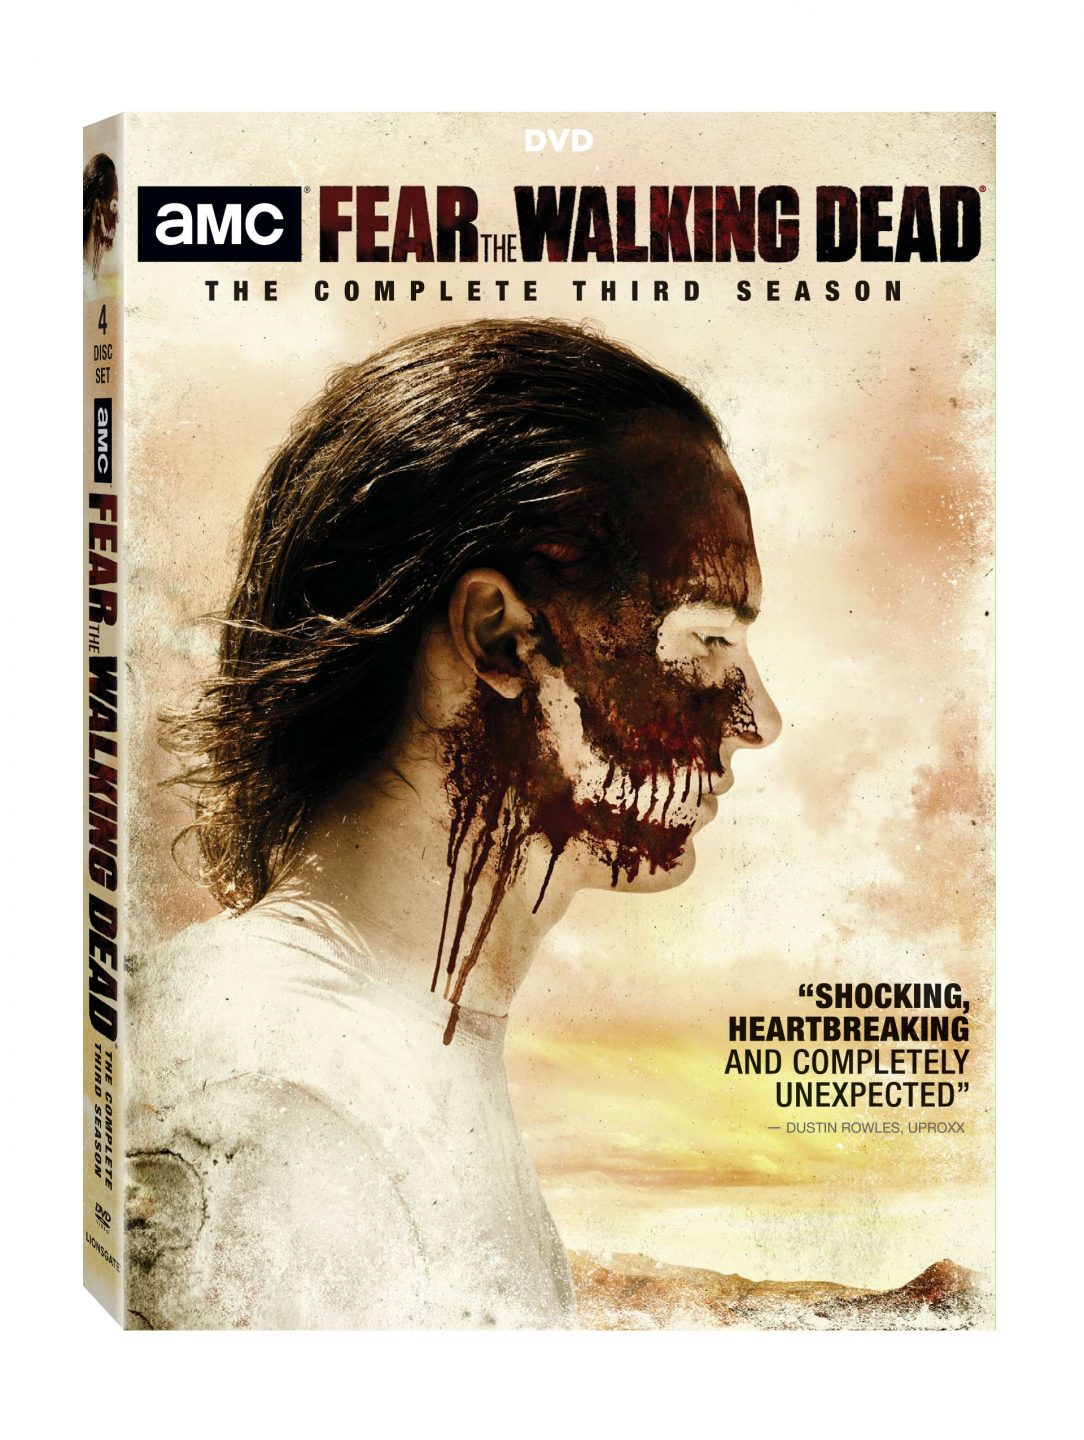 Fear The Walking Dead Season Three DVD cover (Lionsgate Home Entertainment)